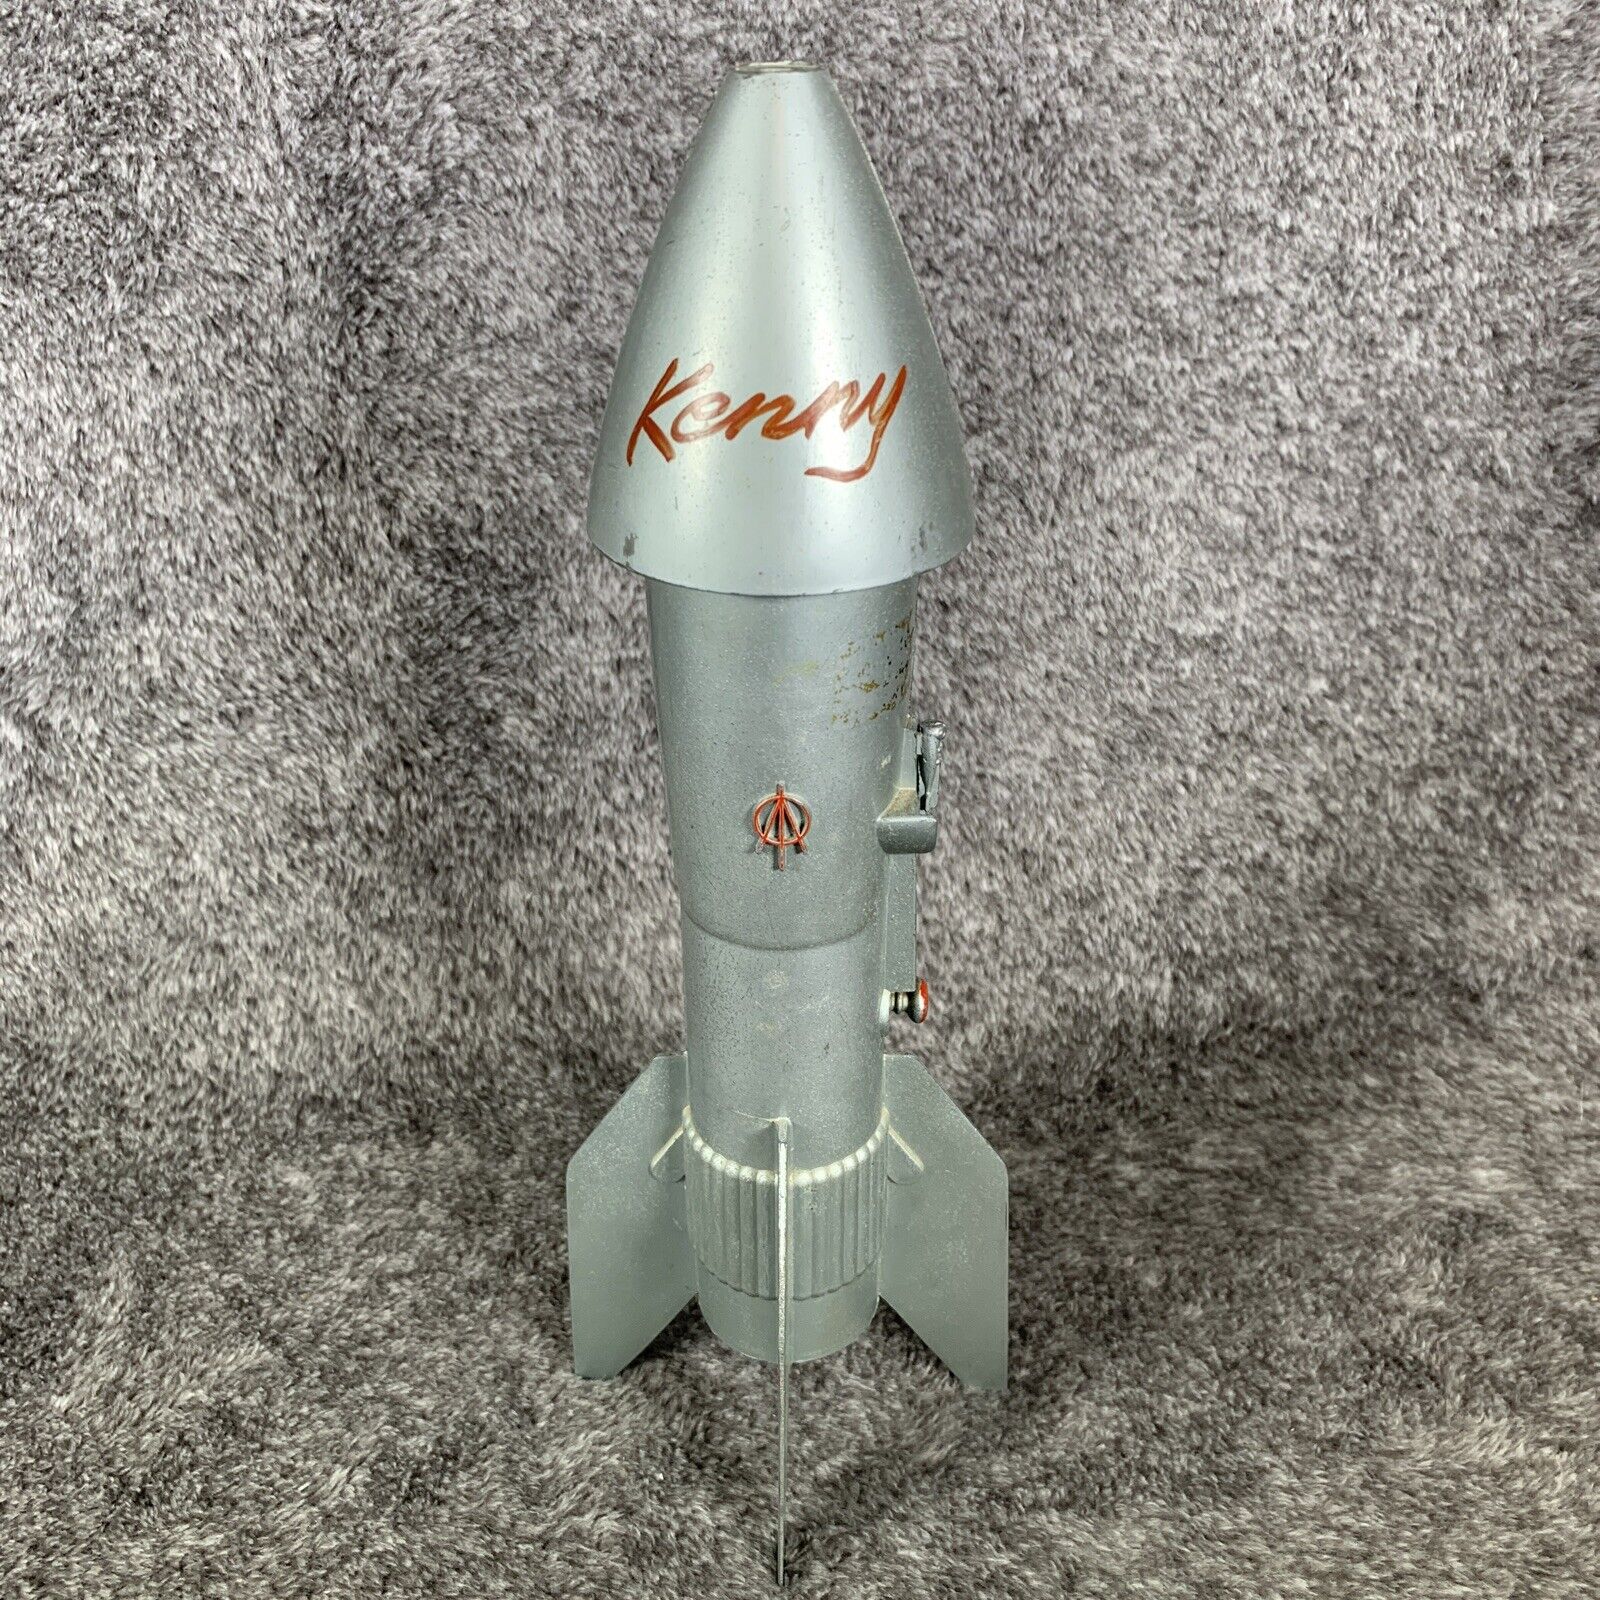 Astro MFG. USA 1957 - A Berzac Creation Rocket Vintage